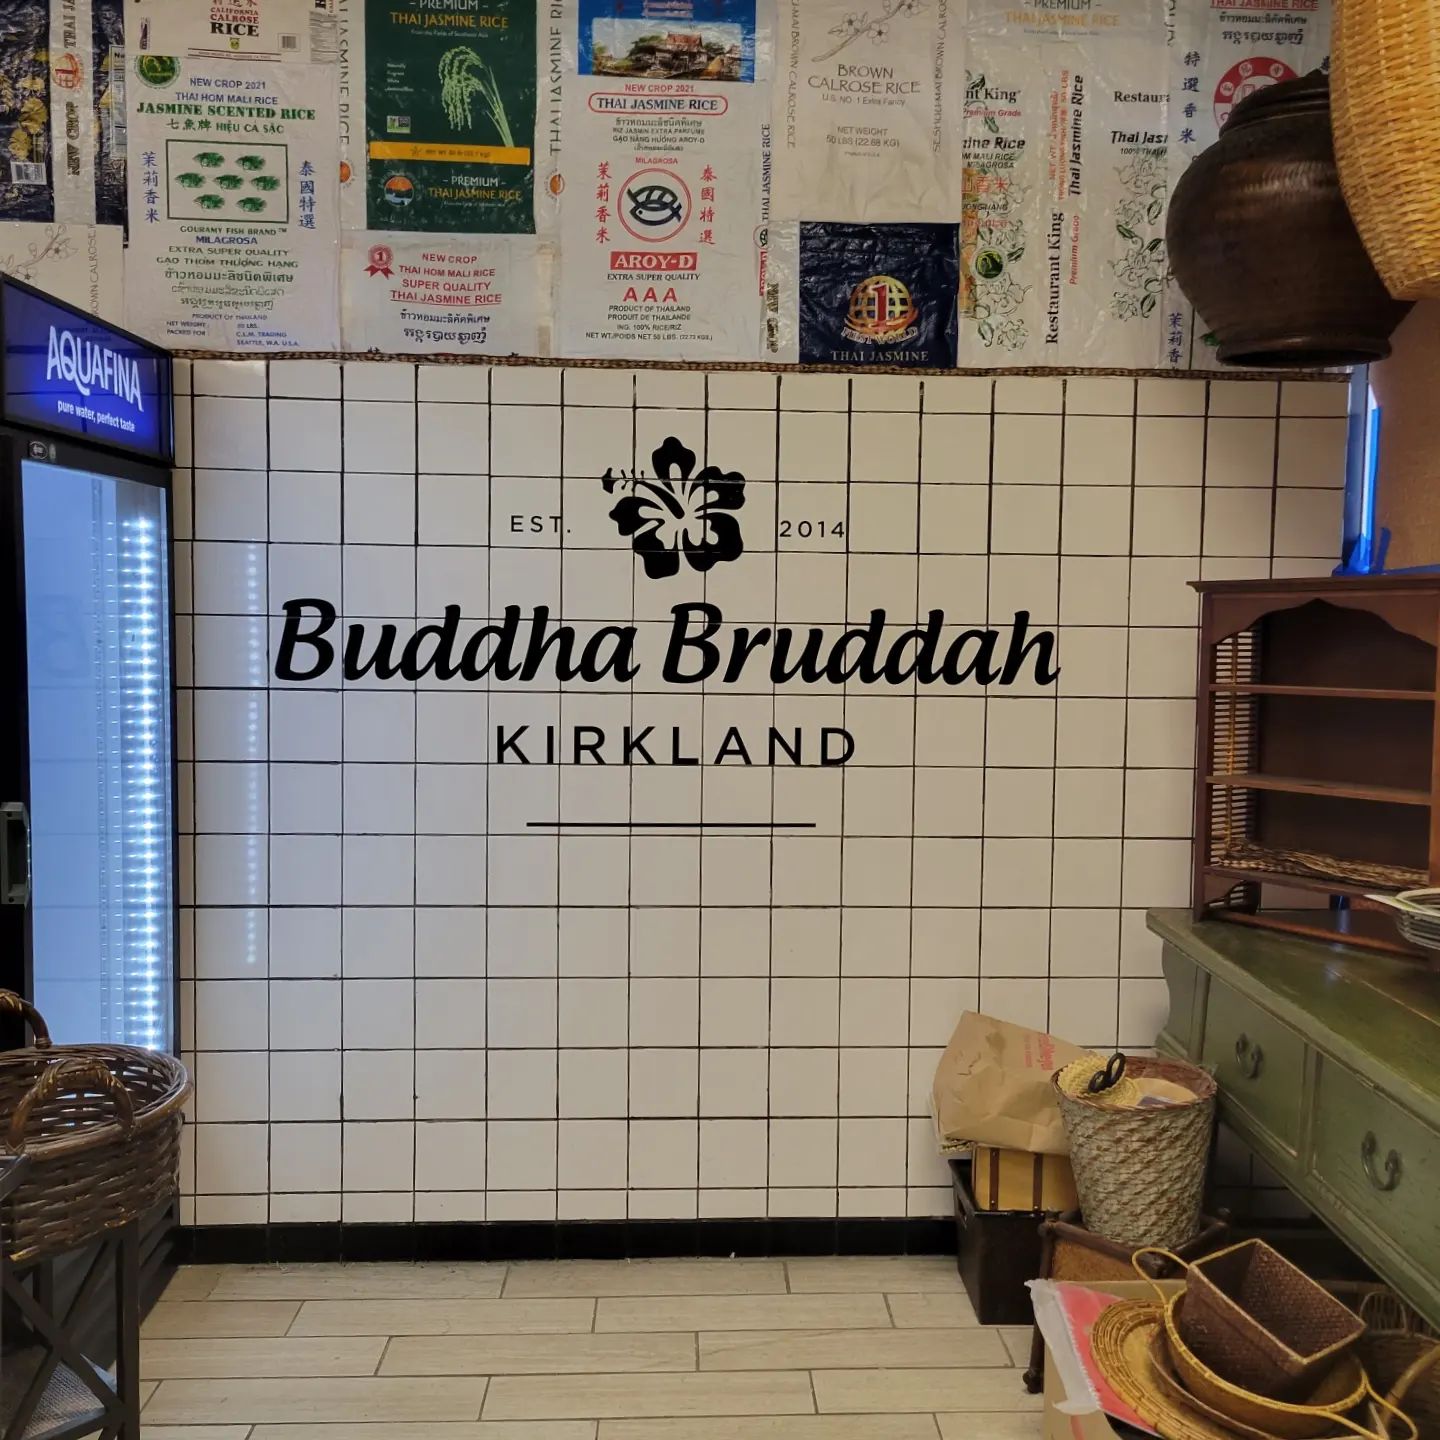 Buddha Bruddah Kirkland